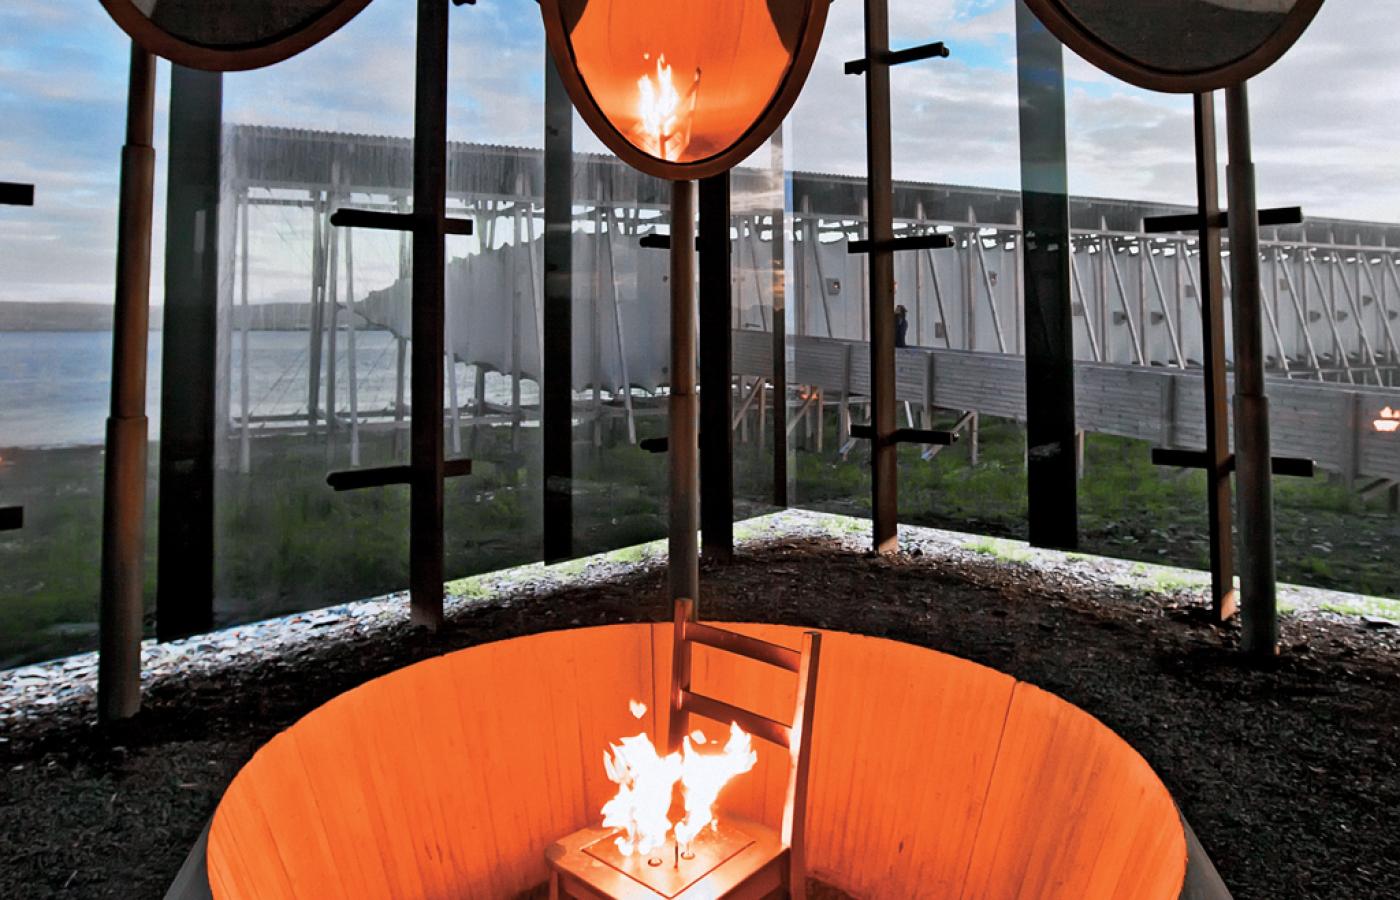 Płonące krzesło w kwadratowym budynku z czarnego szkła symbolizuje wszystkie stosy, jakie zapłonęły w tych okolicach Norwegii.